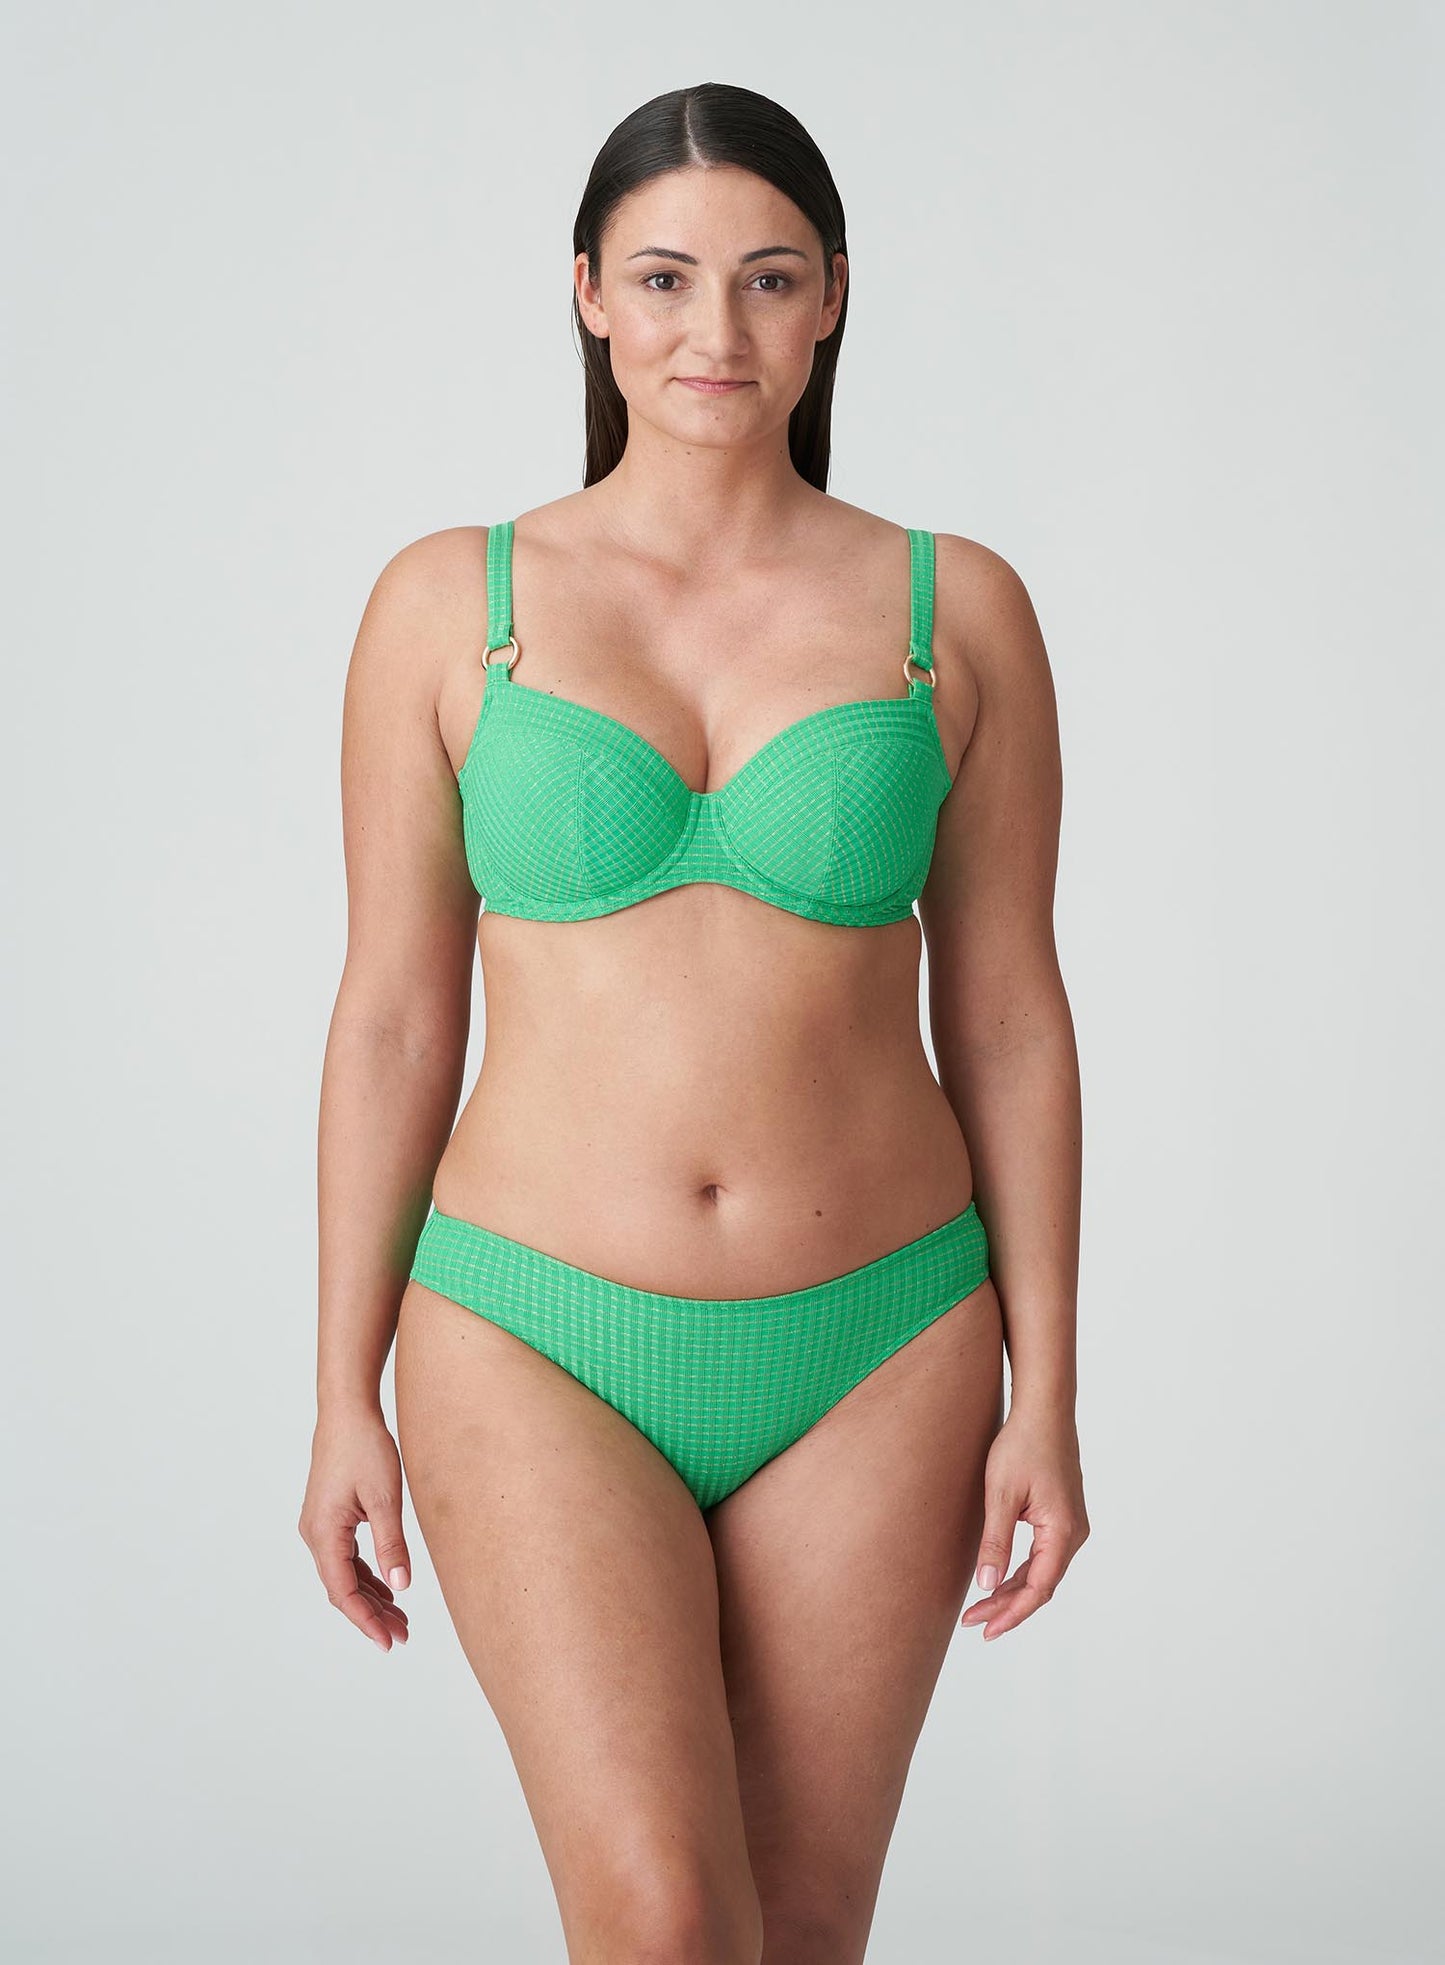 PrimaDonna Swimwear: Maringa Full Cup Bikini Top Lush Green